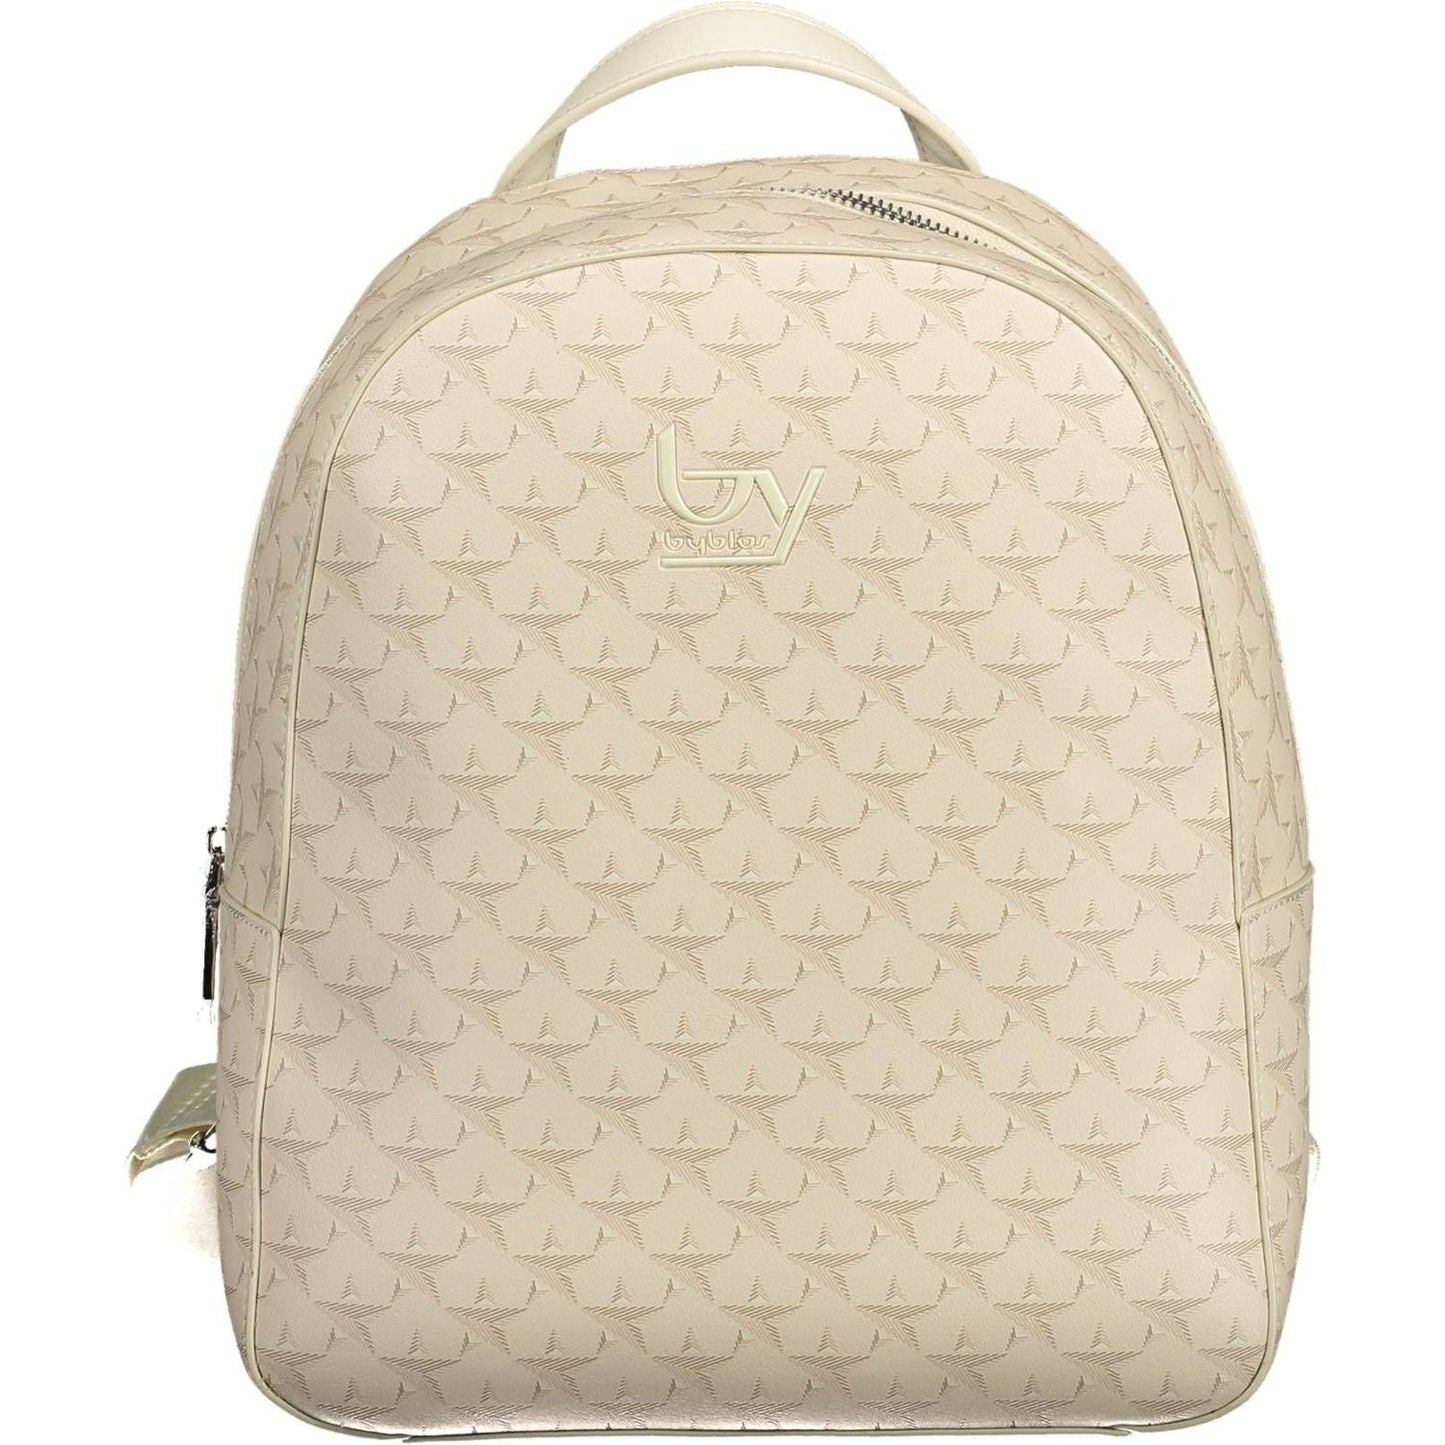 BYBLOS Elegant Beige Backpack with Contrasting Accents elegant-beige-backpack-with-contrasting-accents